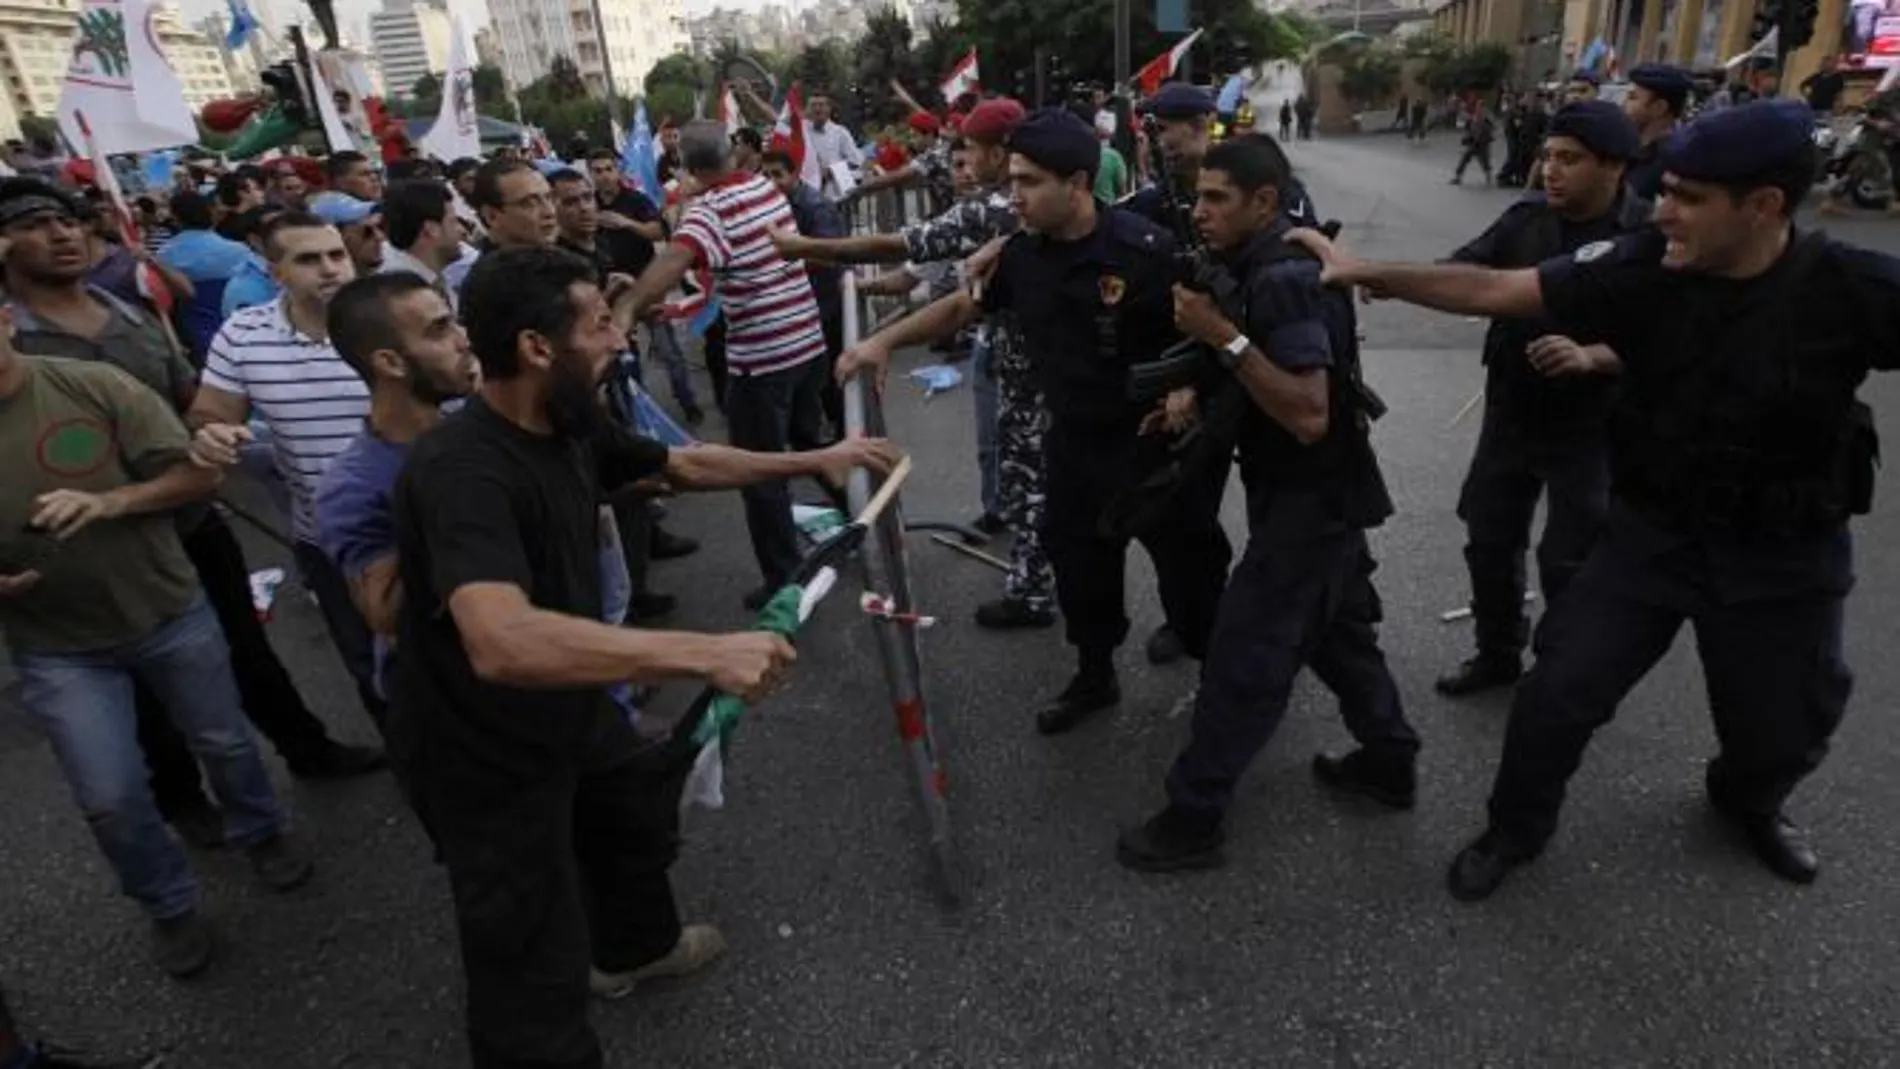 Imagen de los choques en Beirut entre manifestantes y policías